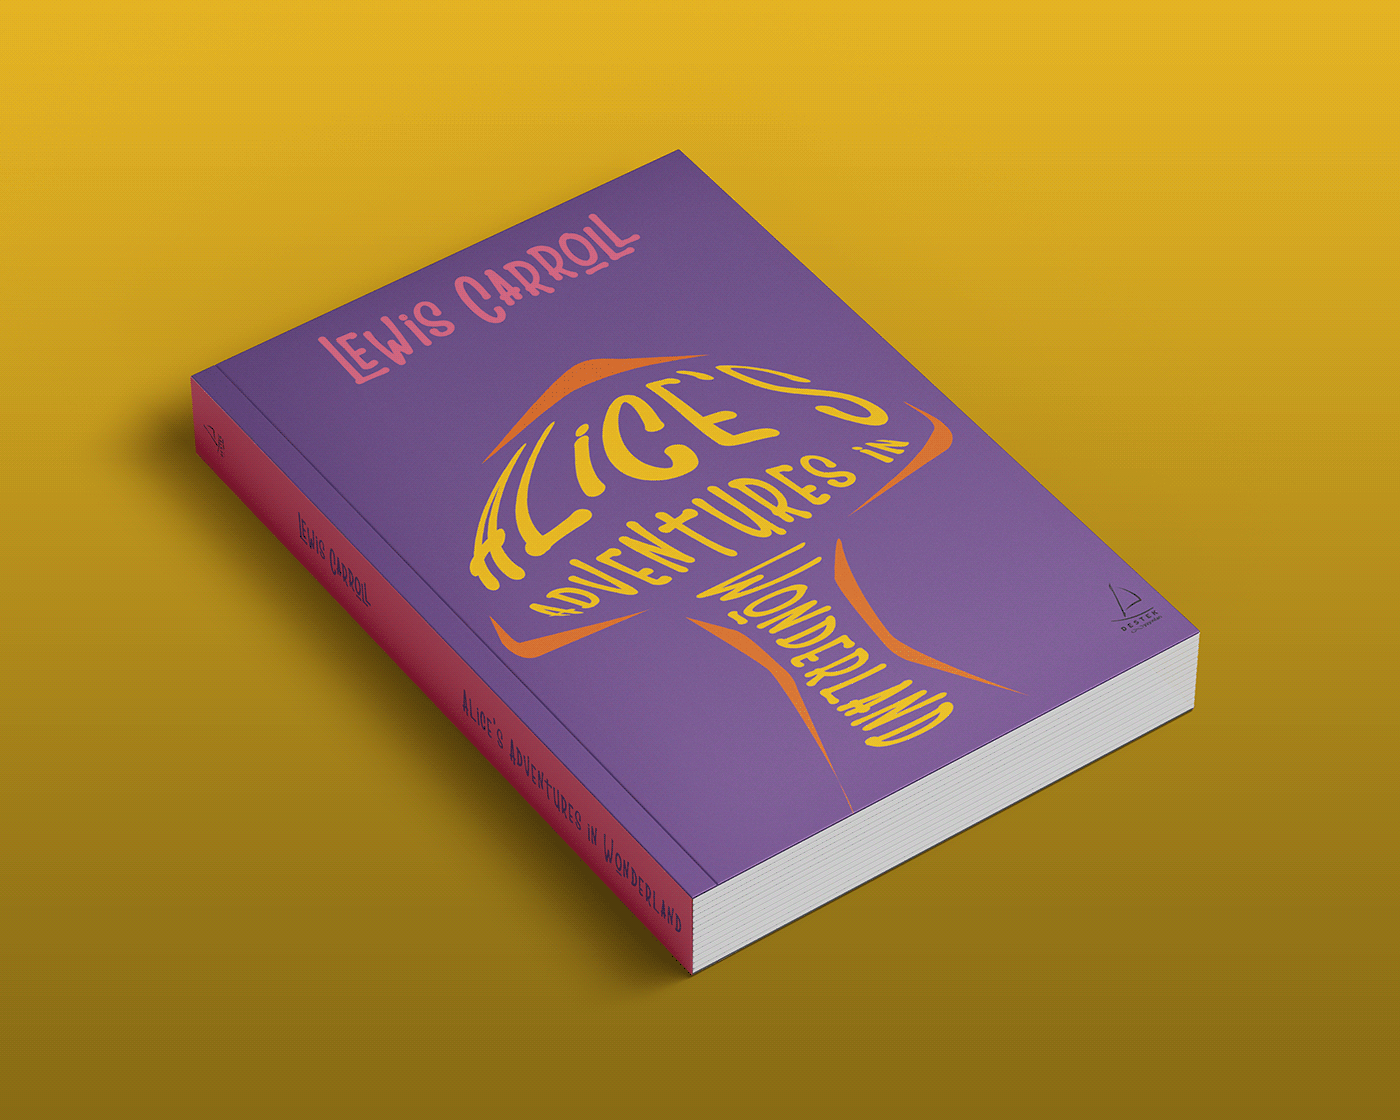 alice in wonderland book cover bookcoverart bookcoverdesign coverdesign editorial design  graphic design  lewiscarroll Typographicdesign typography  